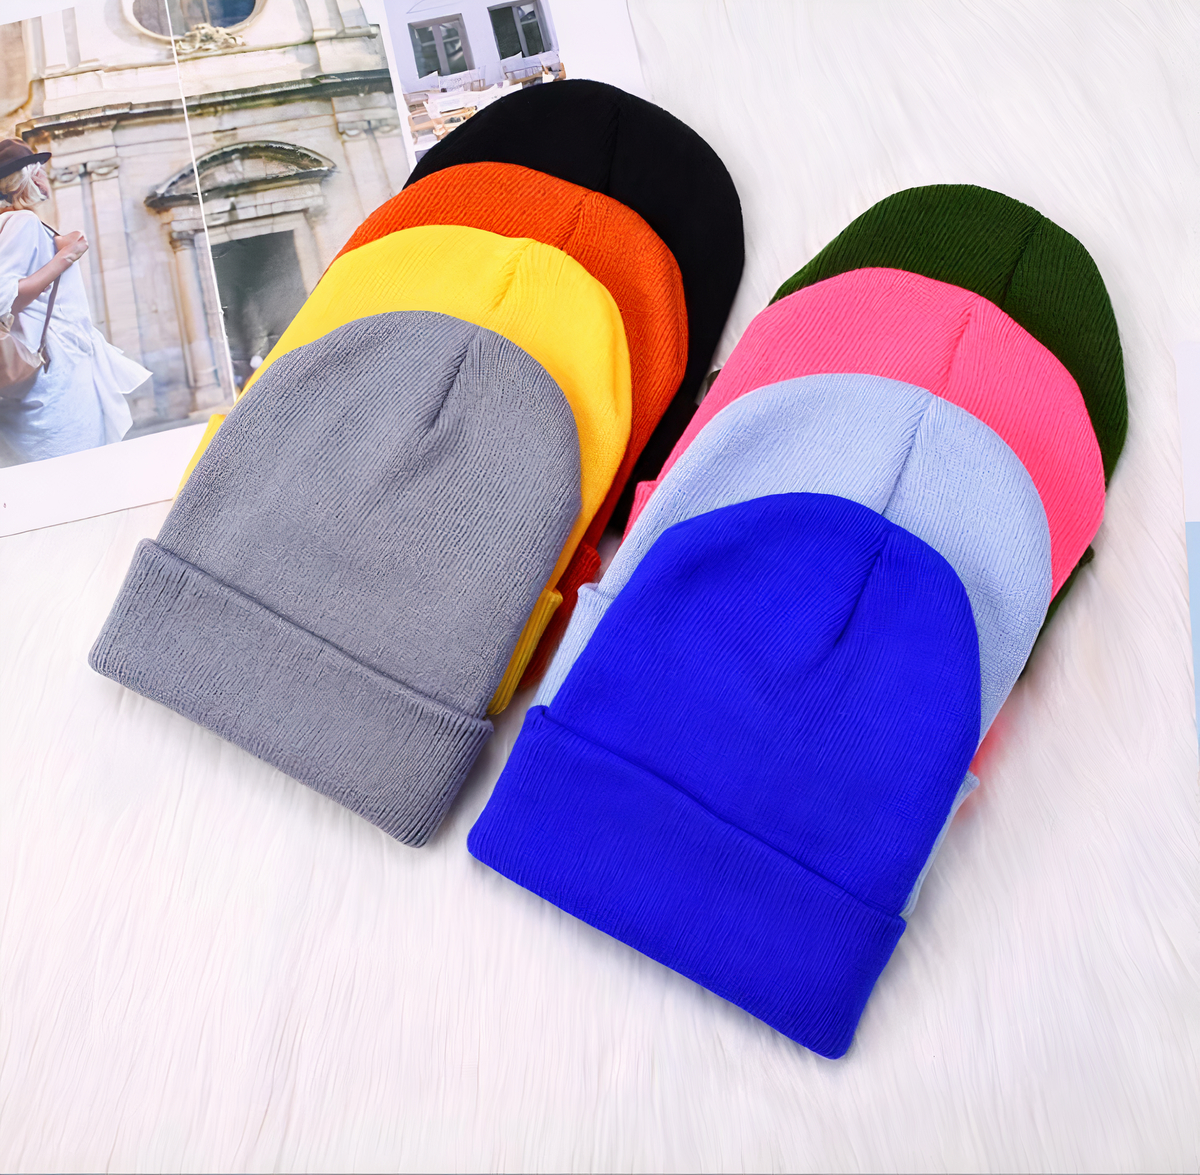 bonnets colorés posés sur une table, avec une photo